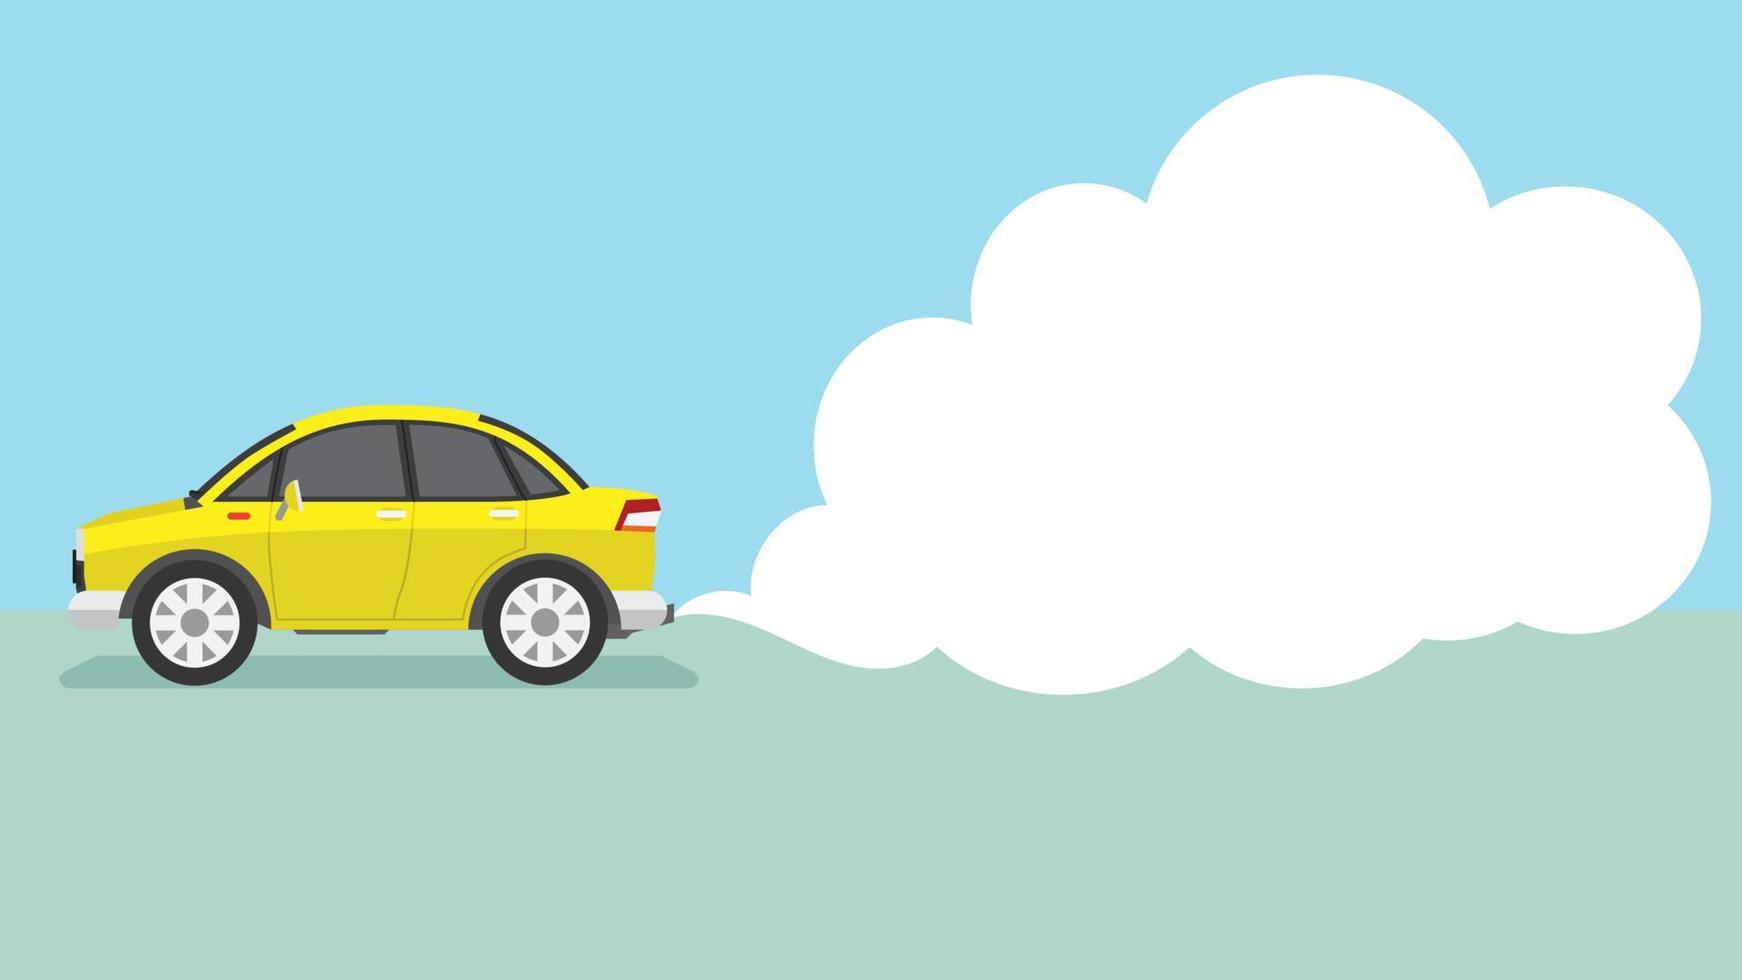 vecteur ou illustration d'une voiture de dessin animé jaune passe en émettant des fumées polluantes ou de la fumée du tuyau d'échappement. espace vide pour le texte dans la fumée.